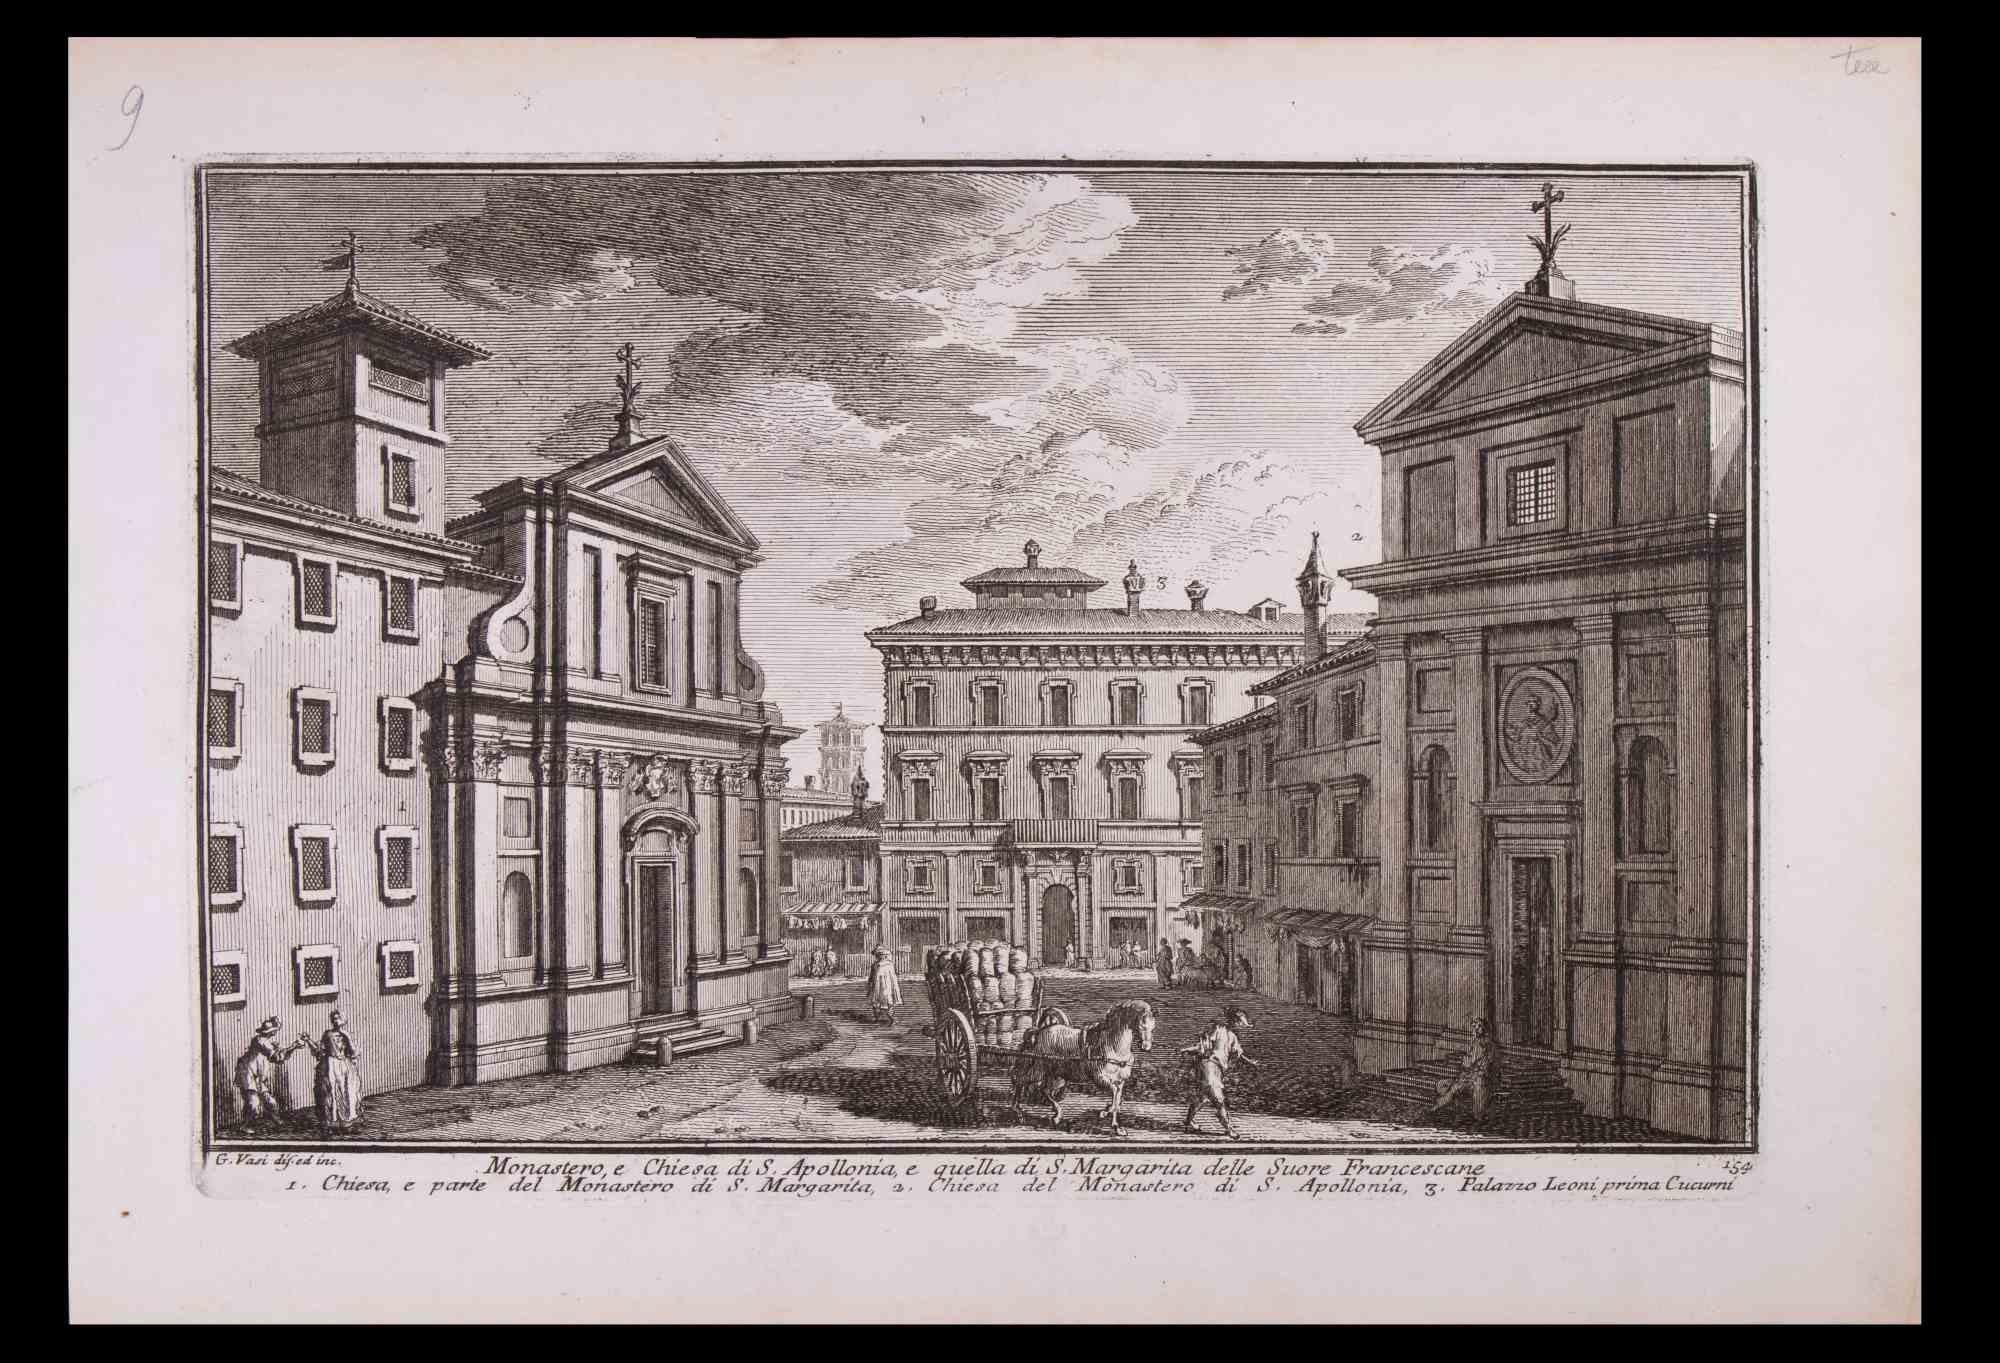 Monastero e Chiesa di S. Apollonia ist eine Original-Schwarz-Weiß-Radierung aus dem späten 18. Jahrhundert von Giuseppe Vasi.

Die schöne Radierung zeigt einen Blick auf Rom.

Signiert und betitelt am unteren Rand der Platte. Auf der unteren Seite